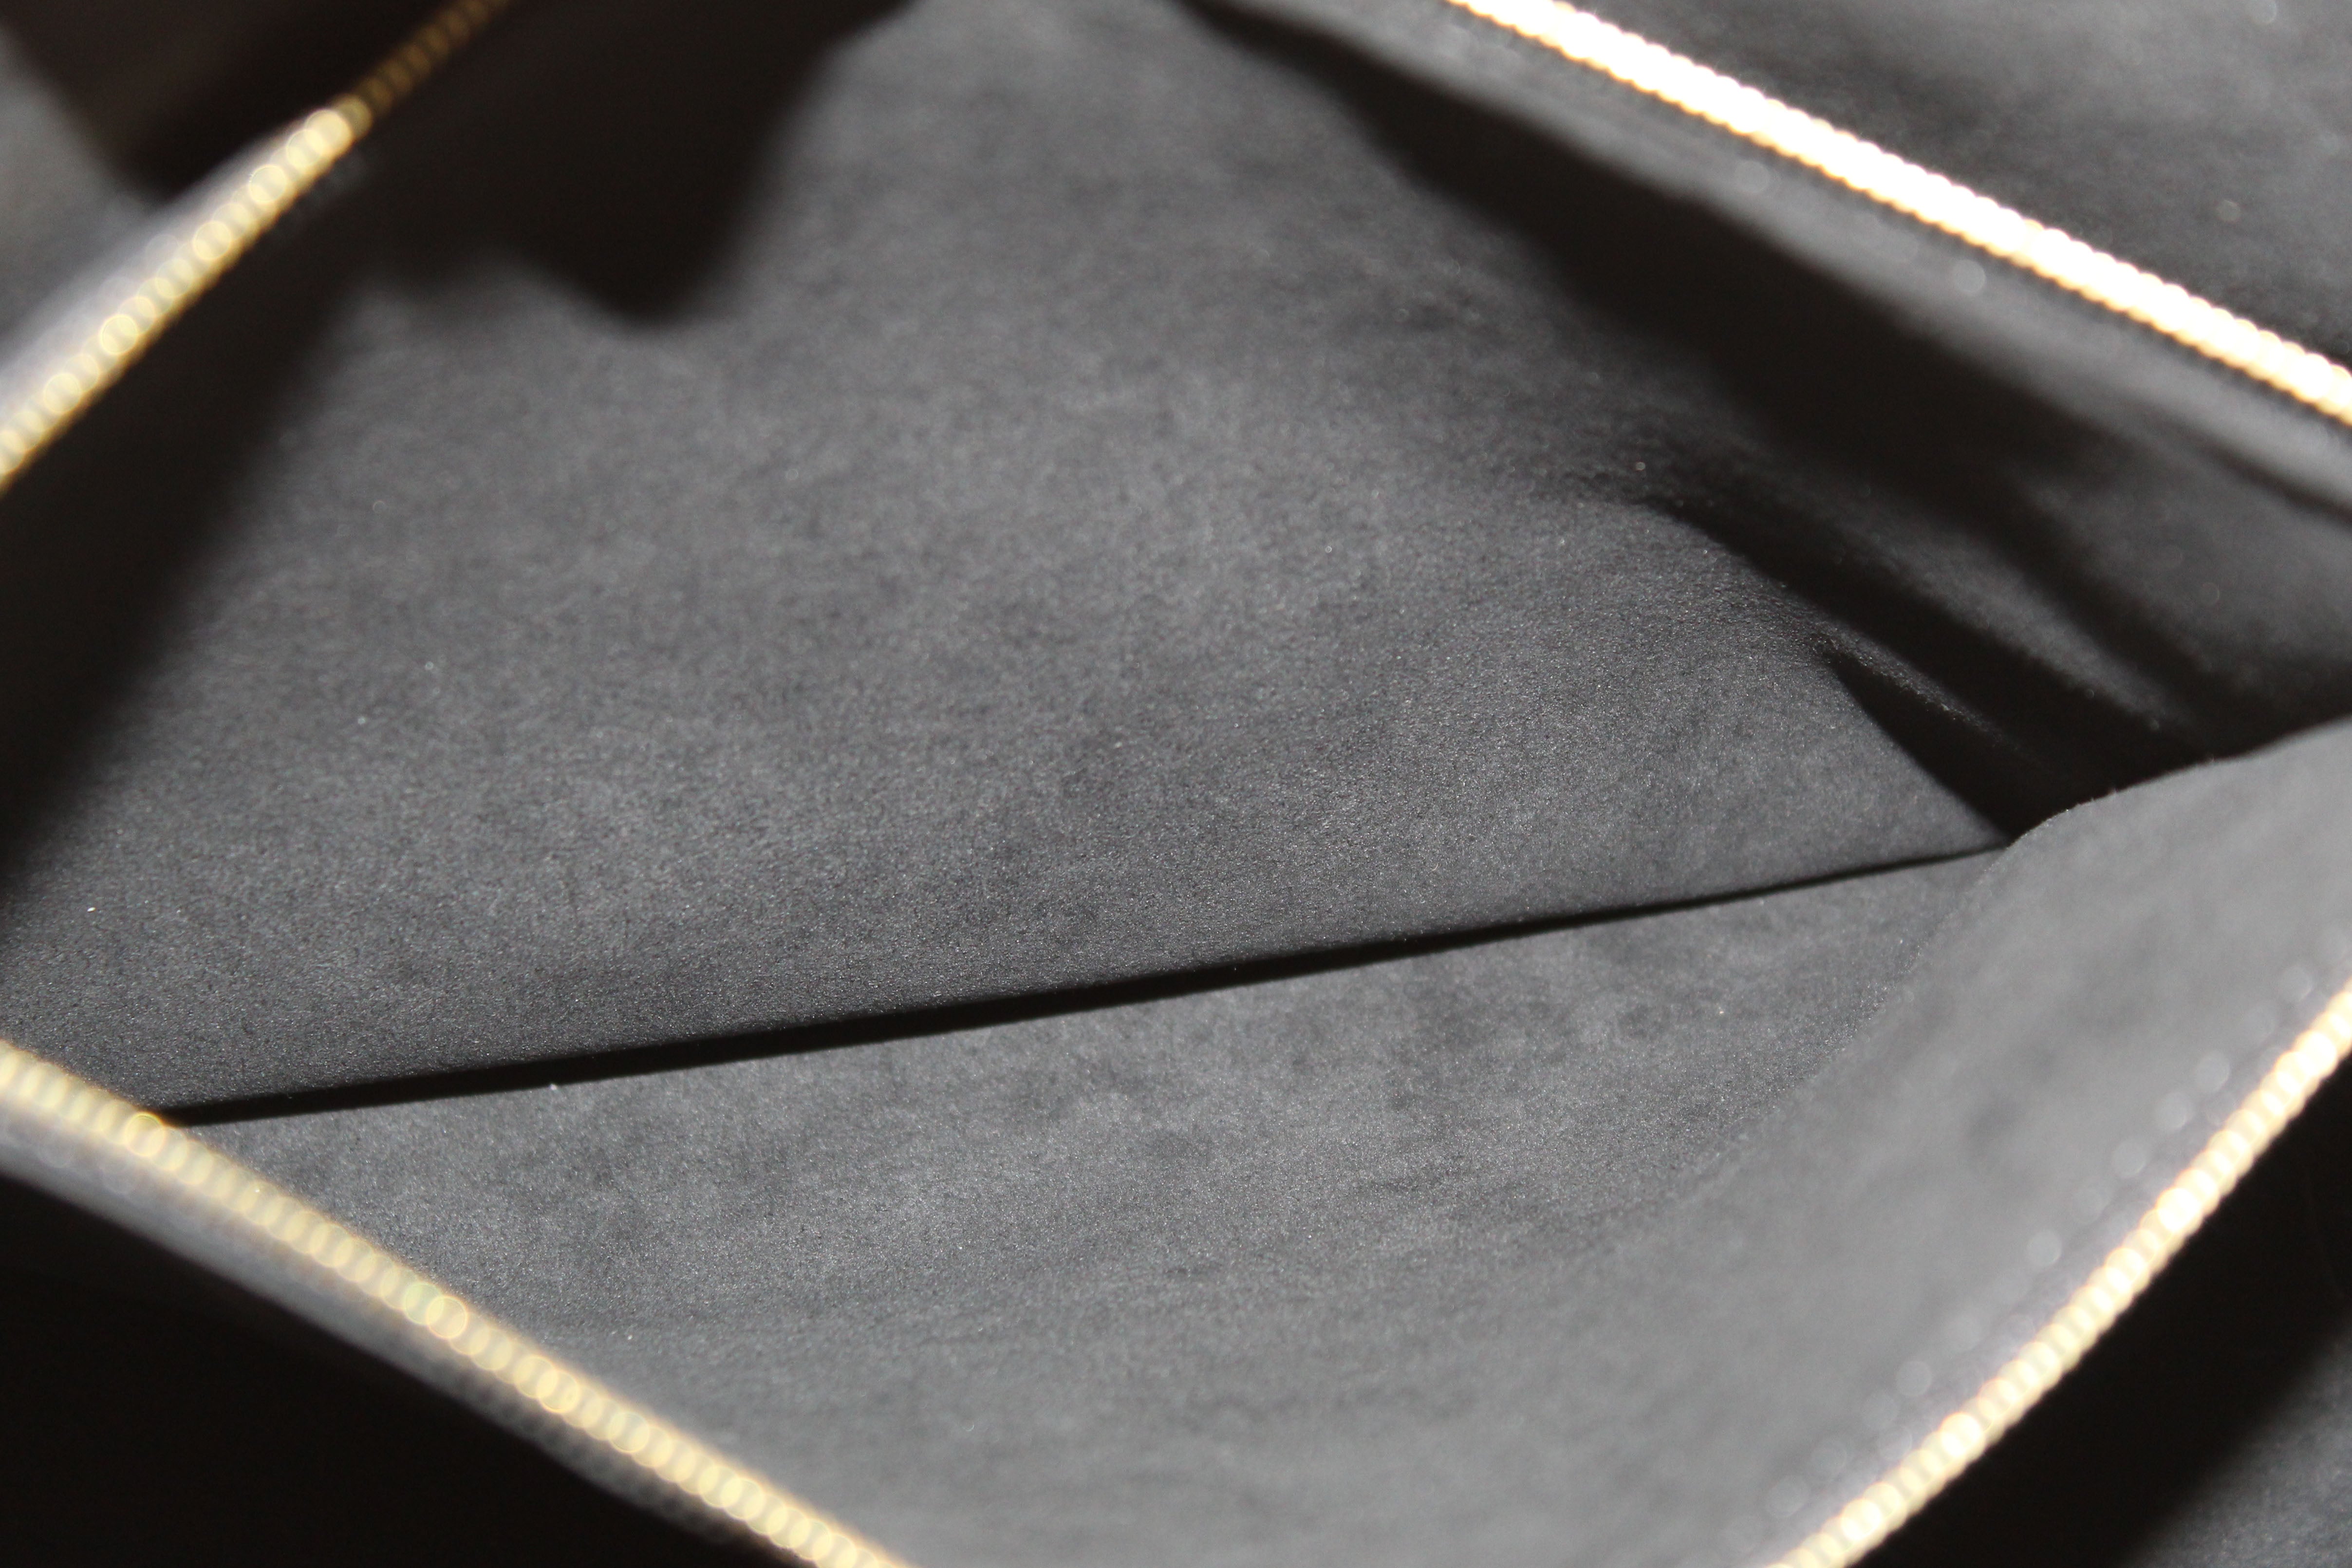 Authentic Louis Vuitton Damier Ebene Canvas With Black Leather Riverside Bag